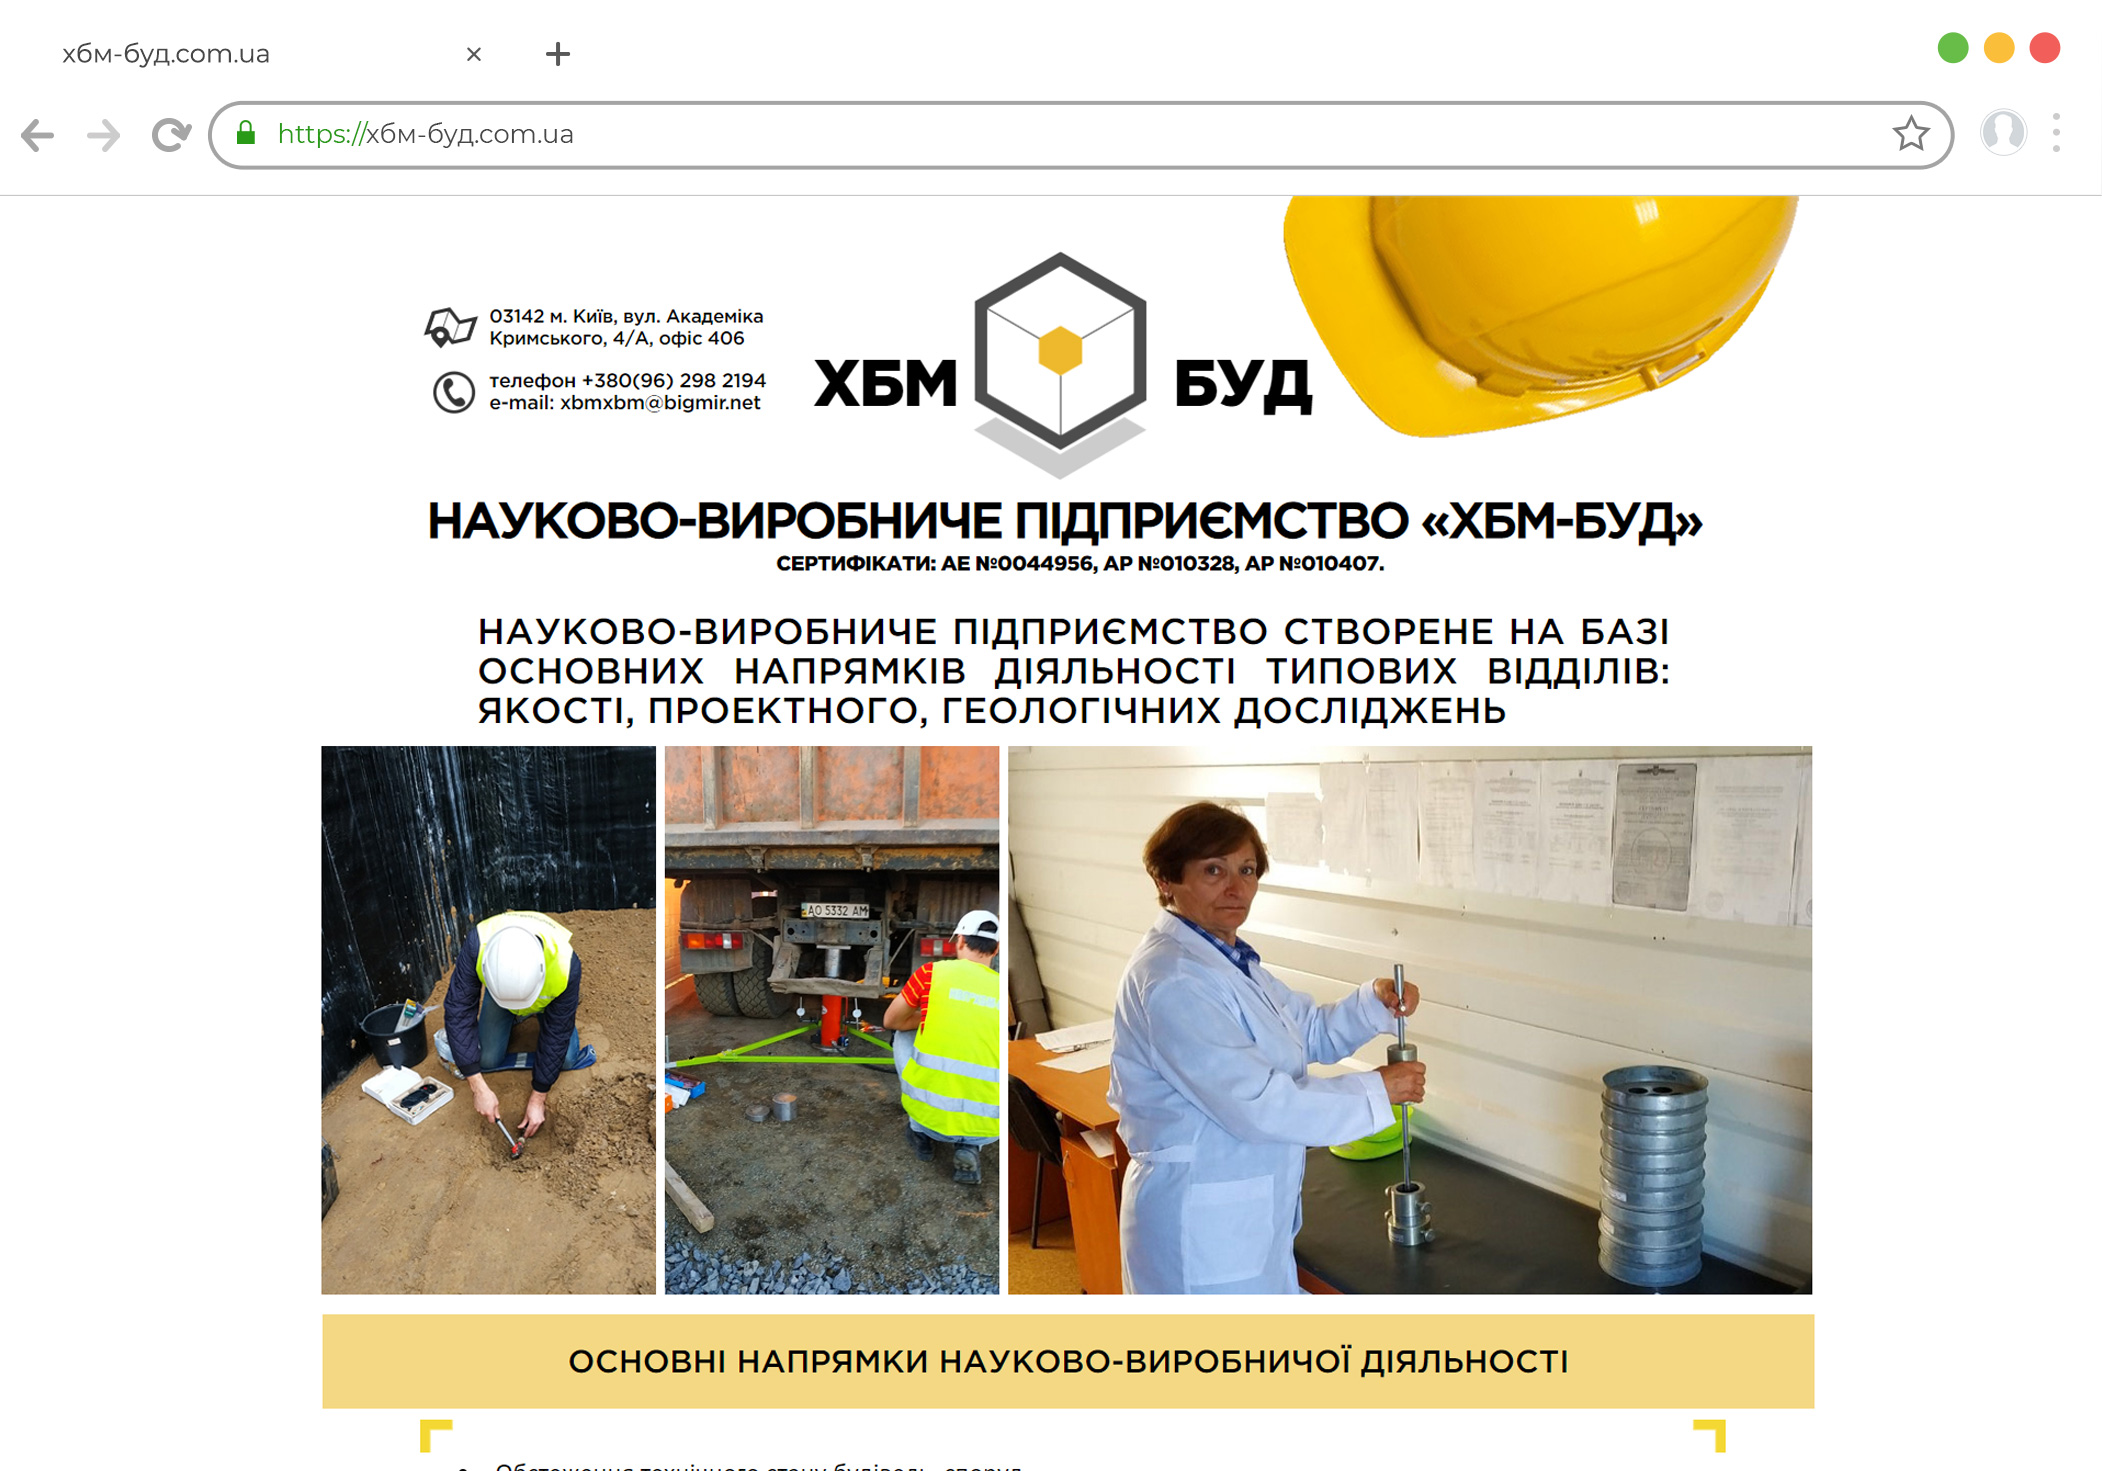 Сайт для научно-производственное предприятие «ХБМ-БУД»